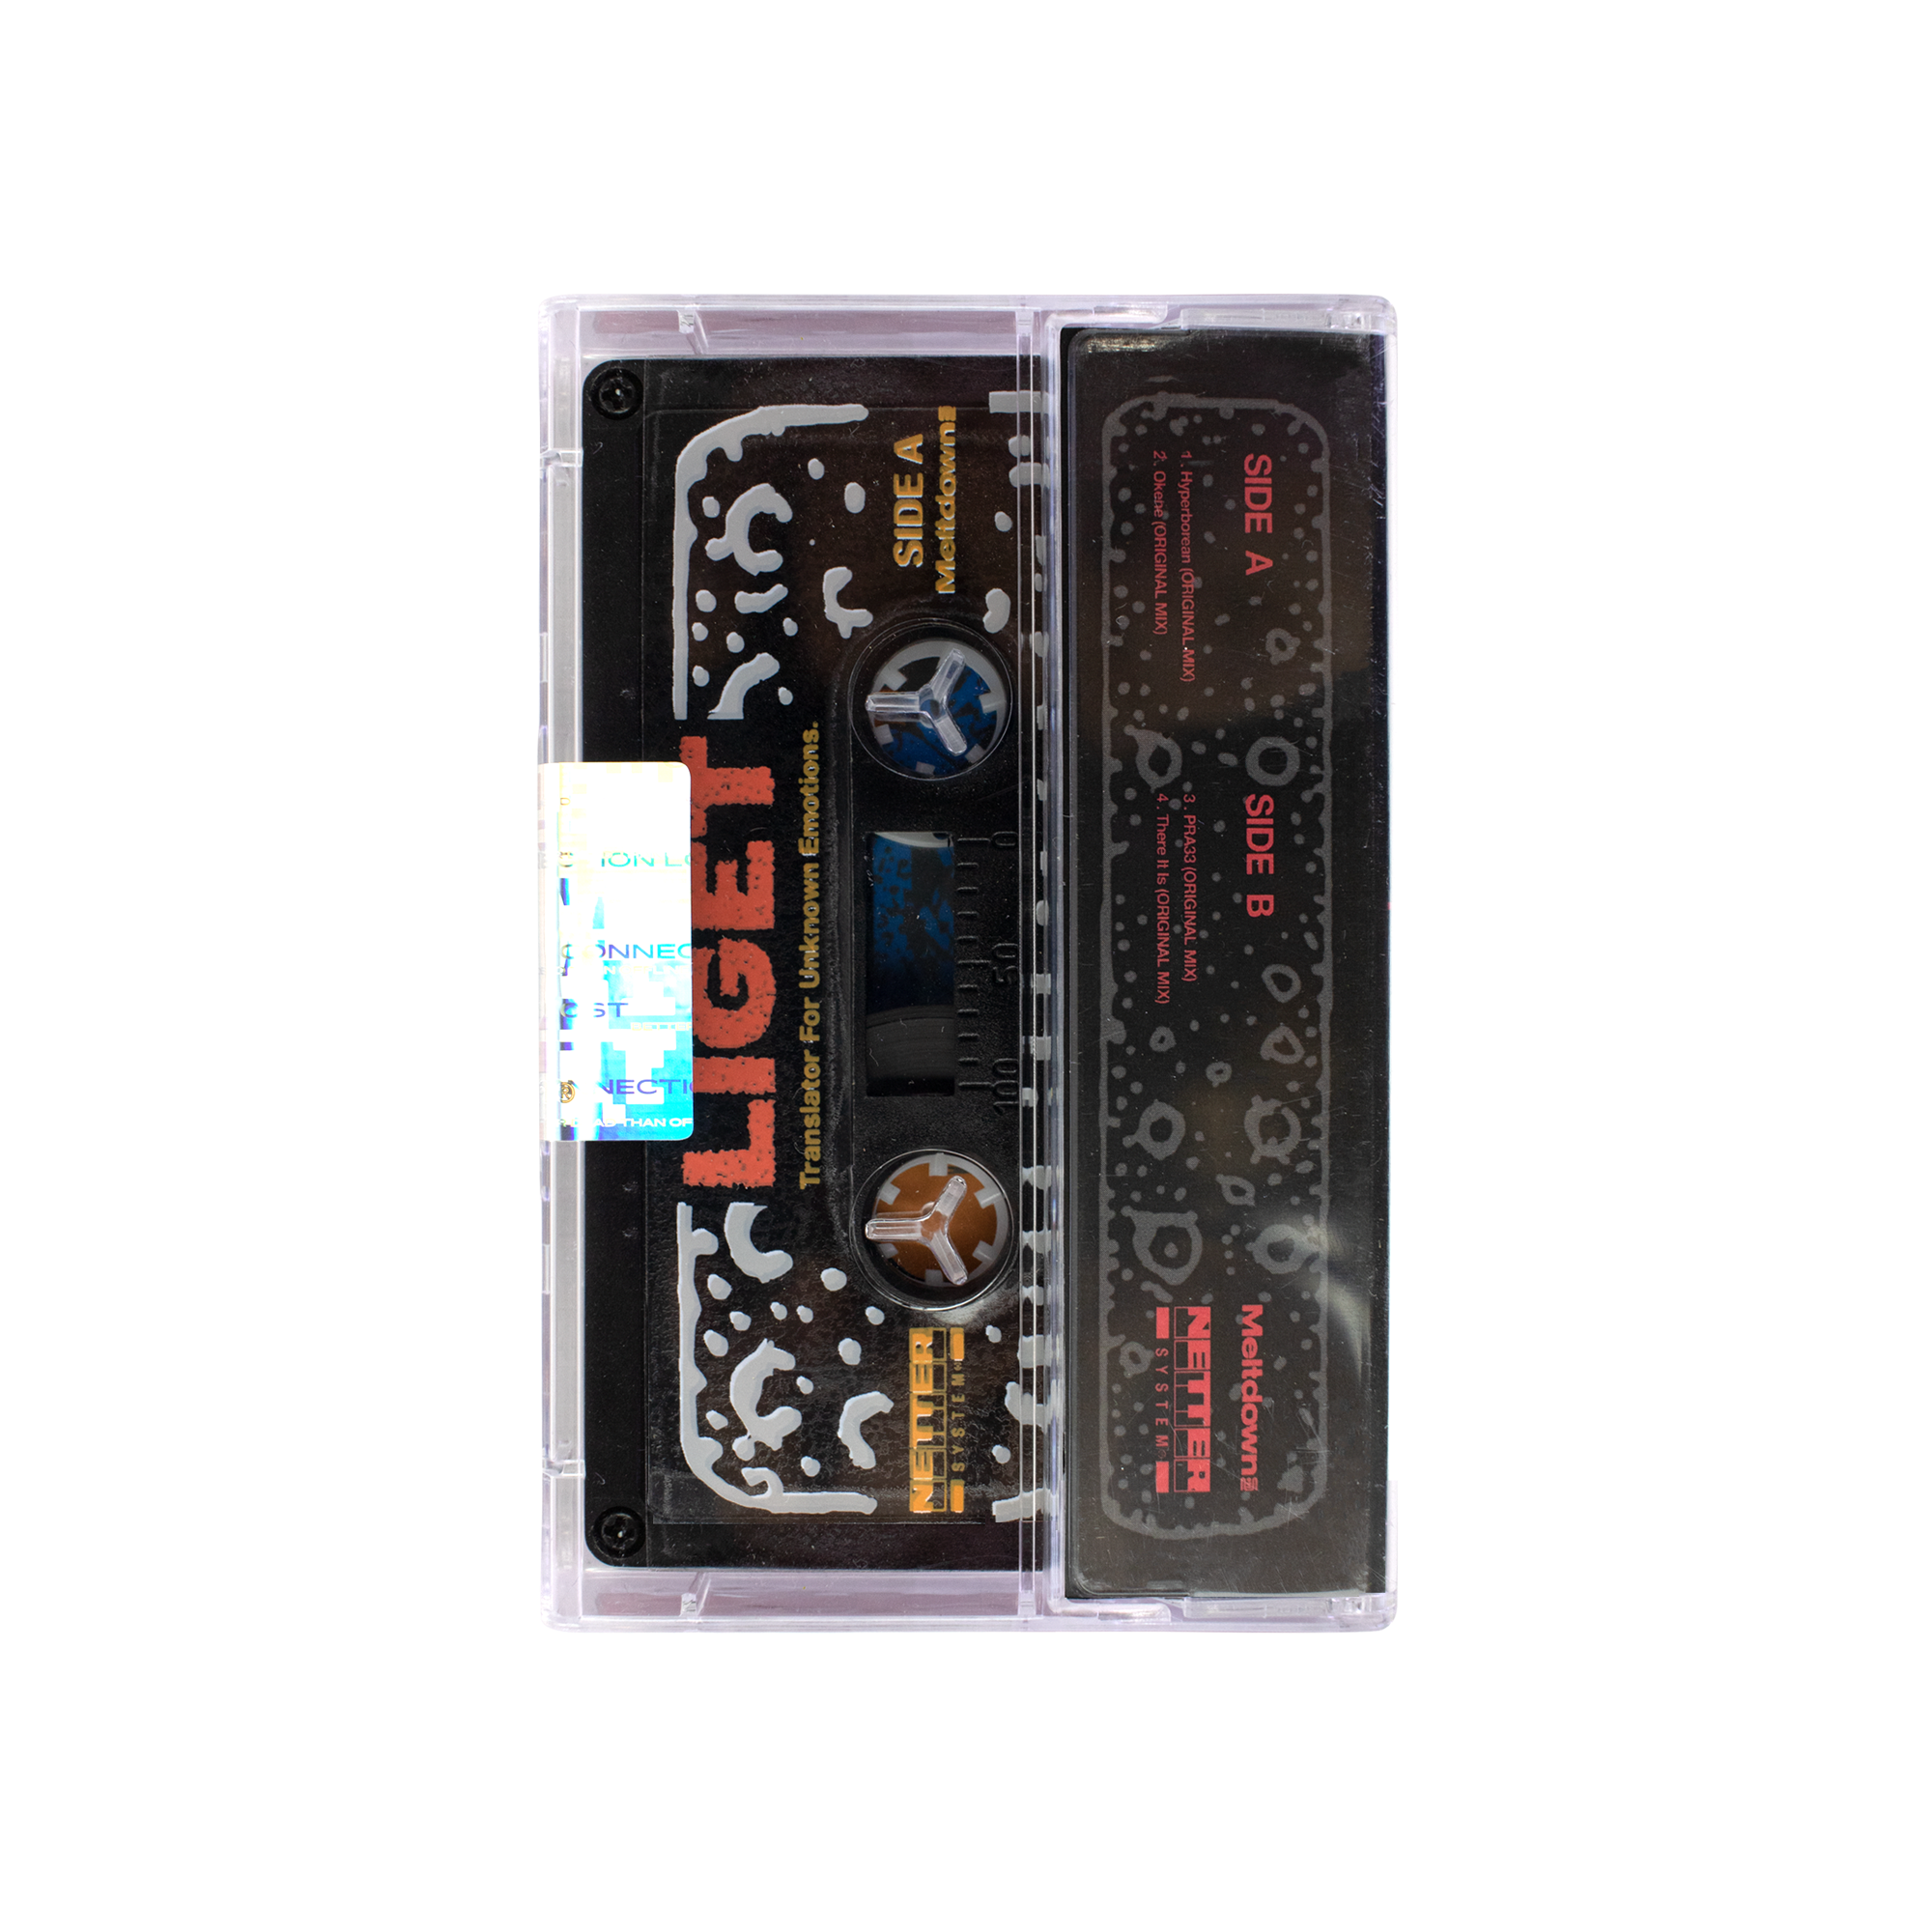 Netter System 001 - Liget Cassette Tape